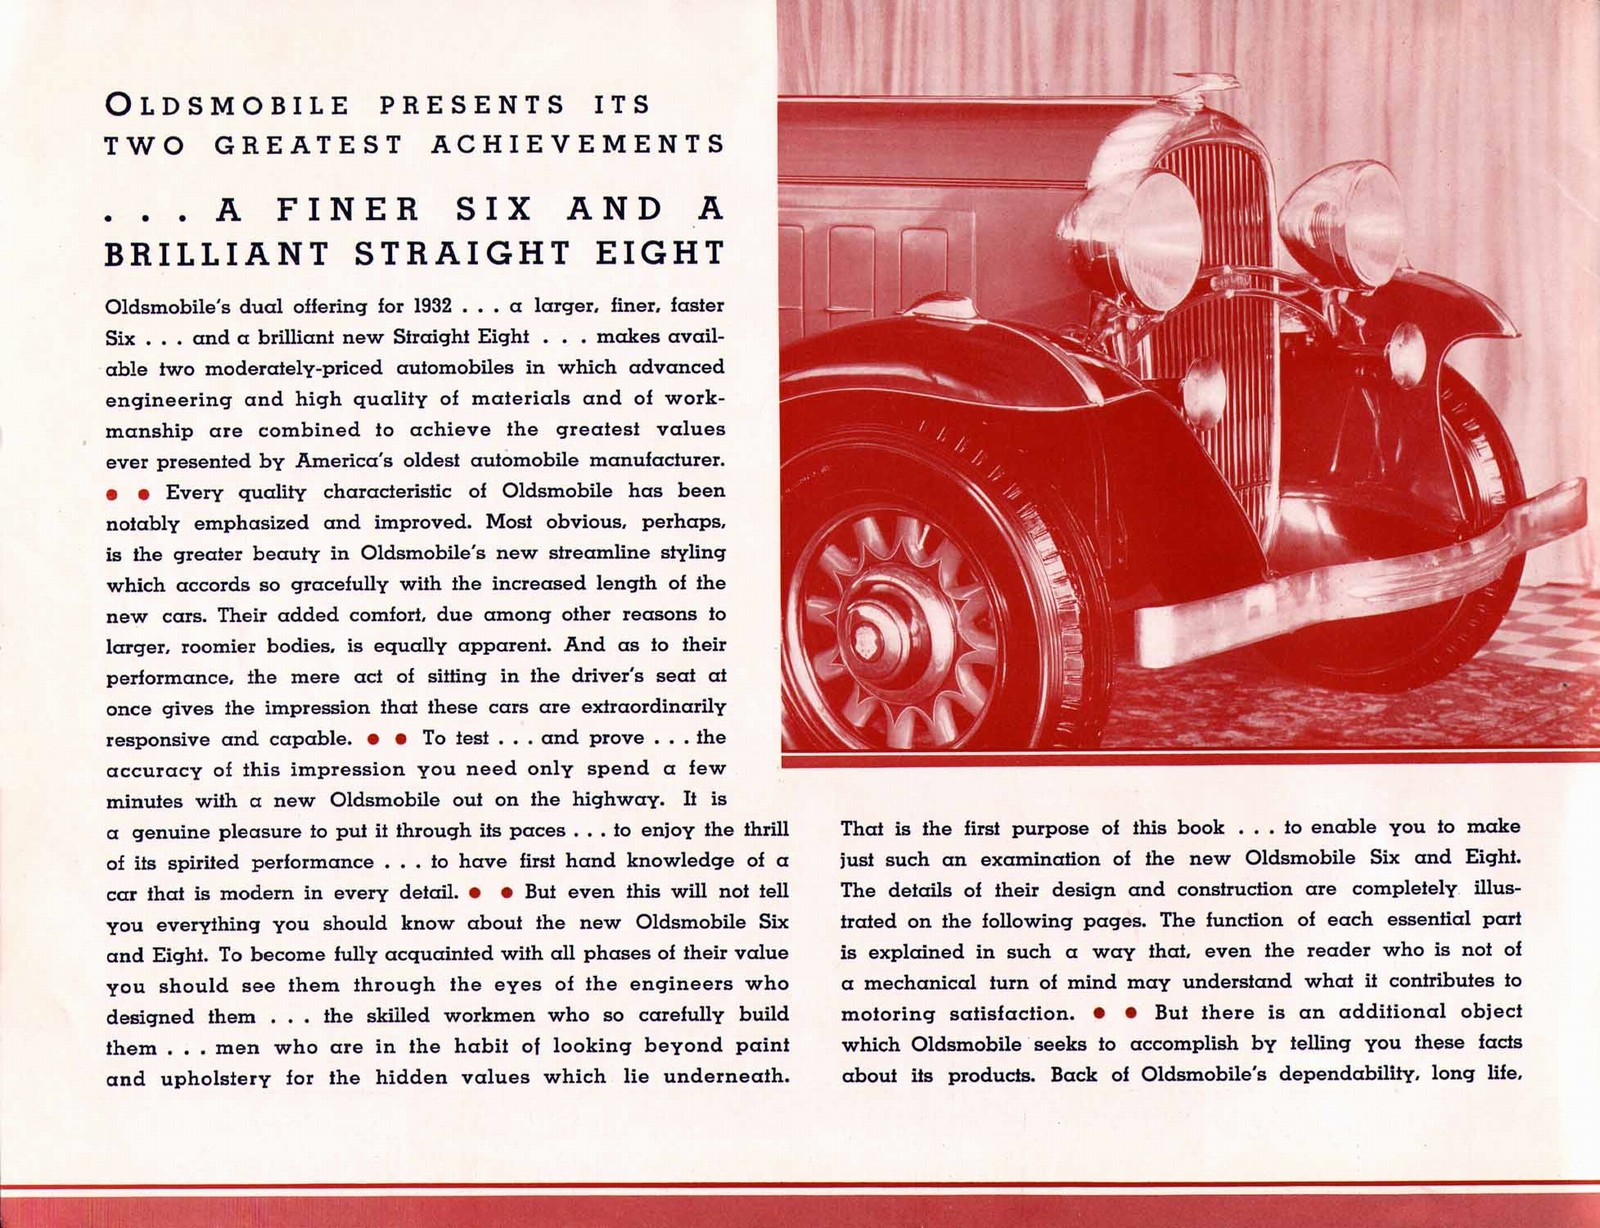 n_1932 Oldsmobile Hidden Values-04.jpg